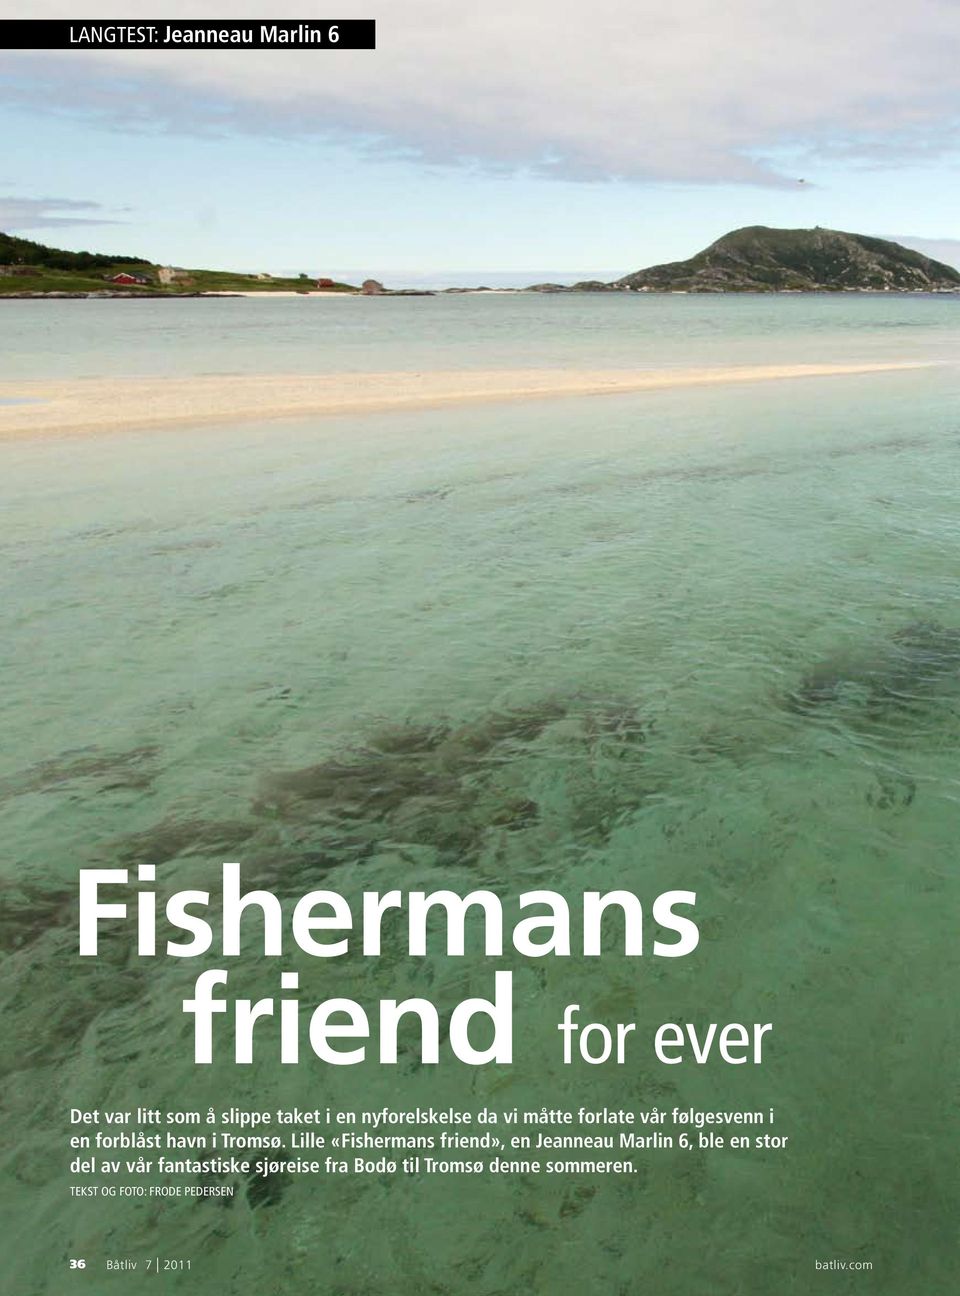 Lille «Fishermans friend», en Jeanneau Marlin 6, ble en stor del av vår fantastiske